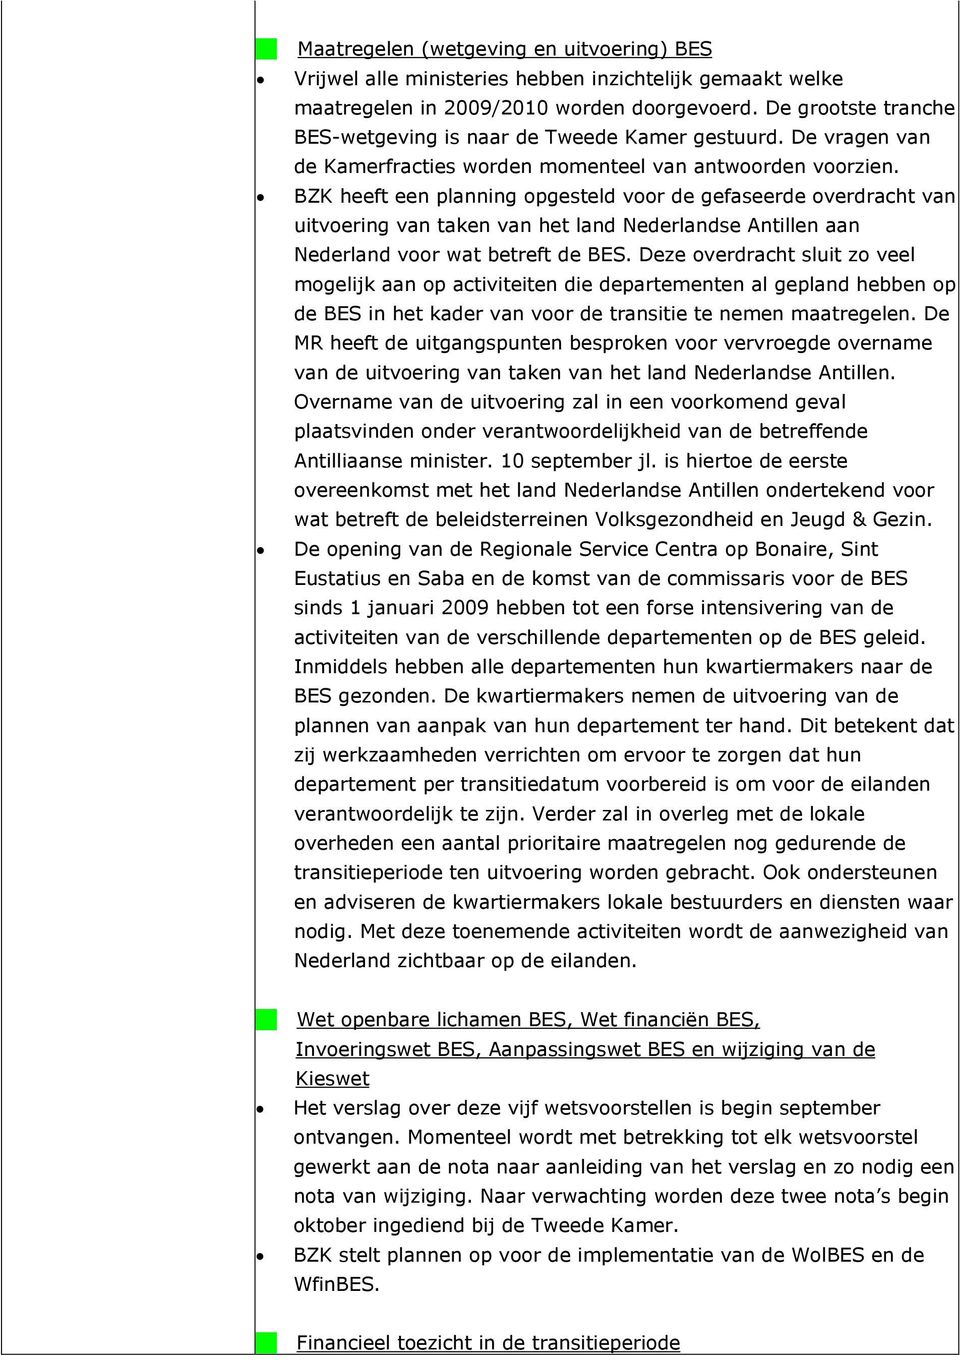 BZK heeft een planning opgesteld voor de gefaseerde overdracht van uitvoering van taken van het land Nederlandse Antillen aan Nederland voor wat betreft de BES.